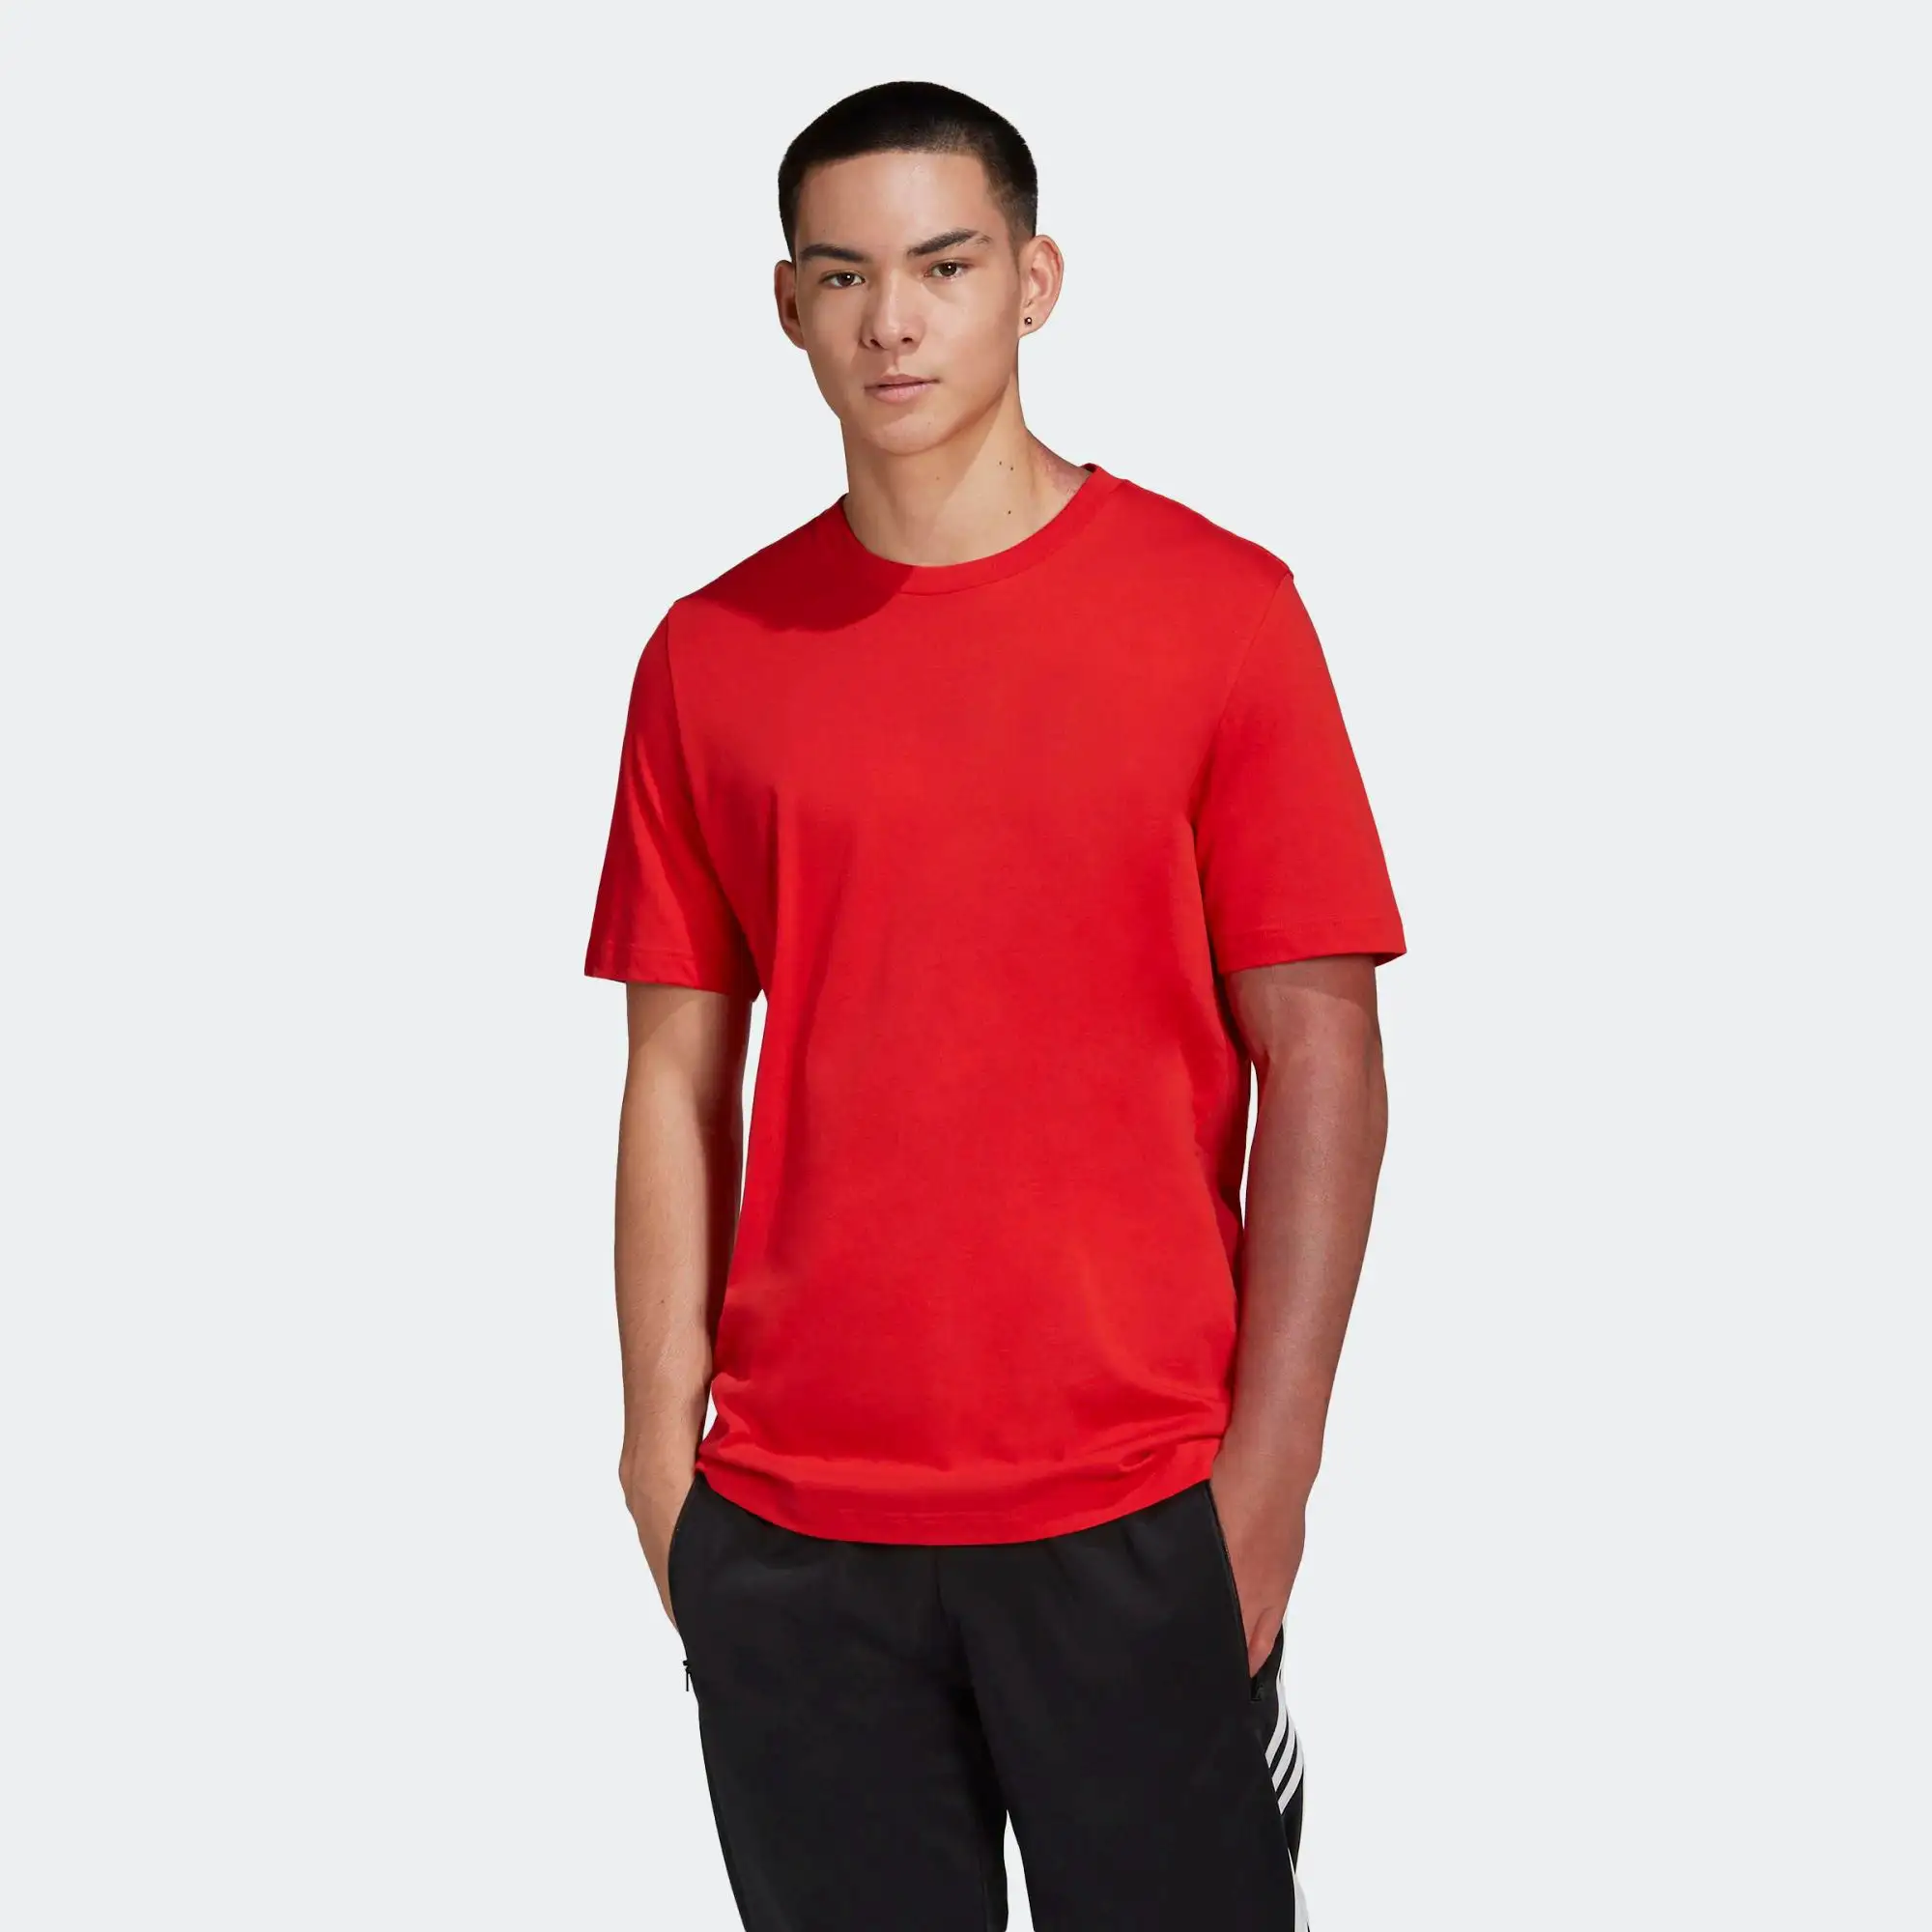 Camiseta masculina 100% algodão com gola redonda canelada, camisa de manga curta vermelha vívida, ideal para homens